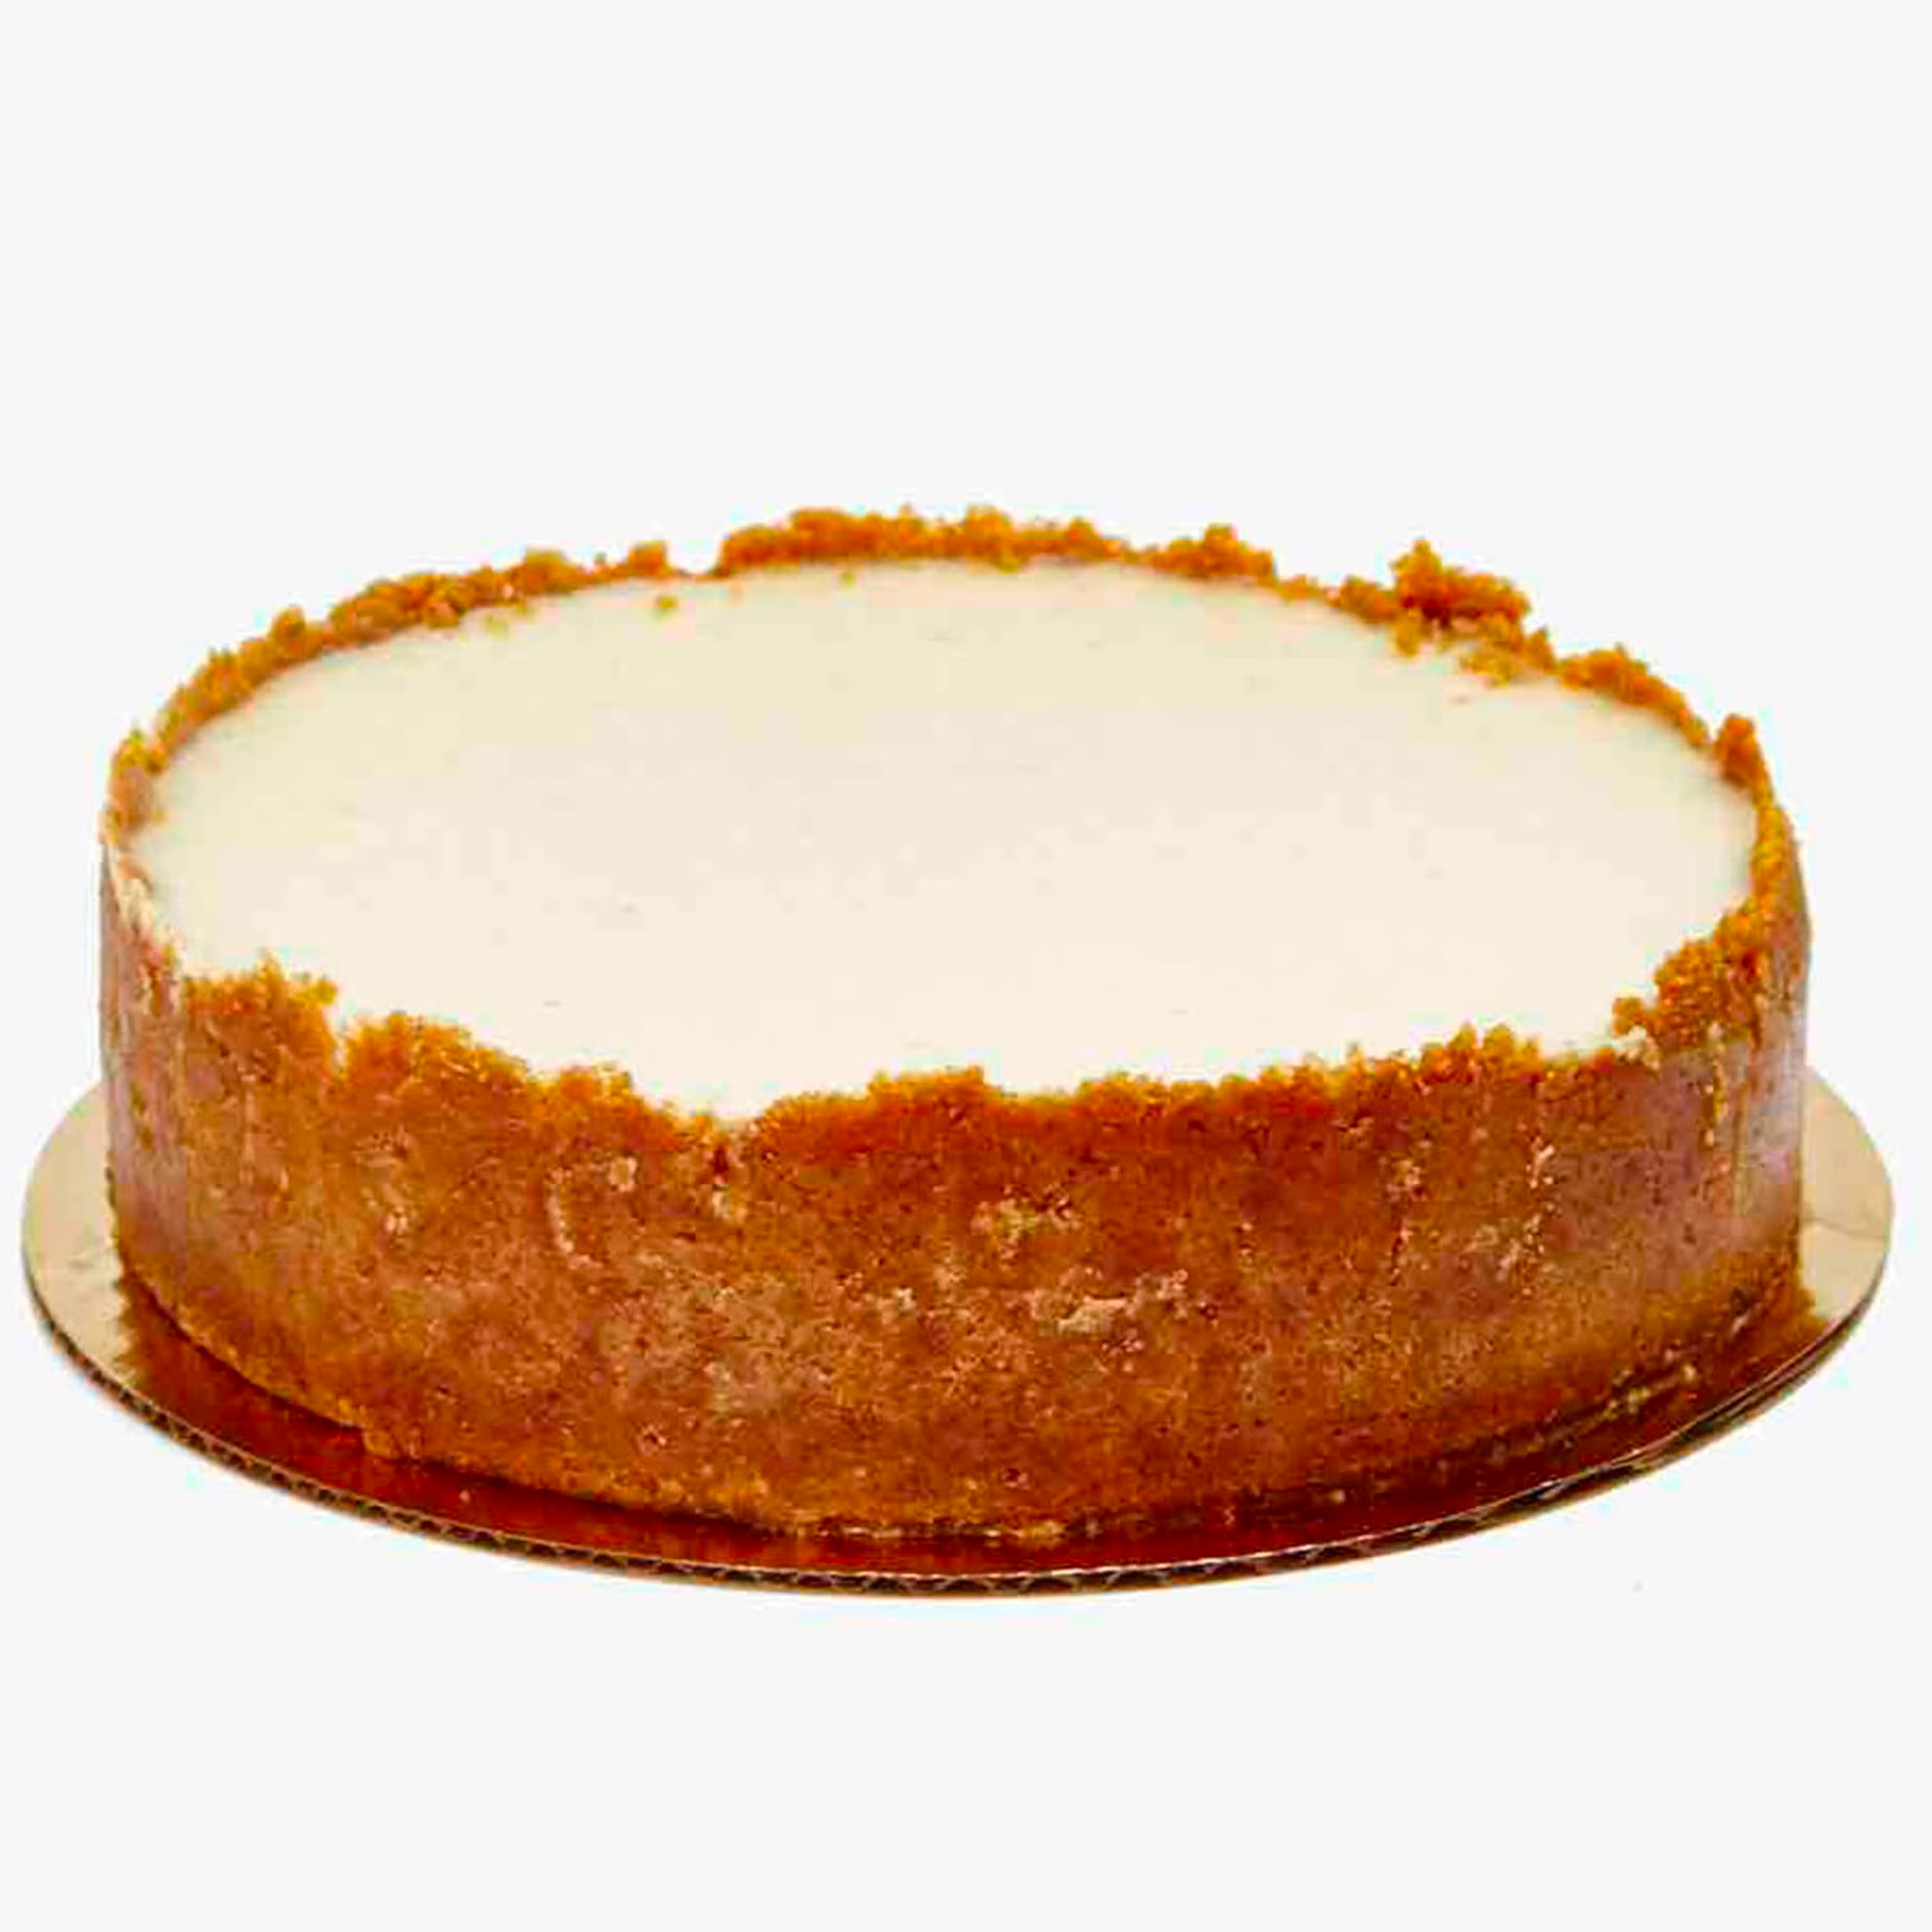 Heavenly Cheesecake